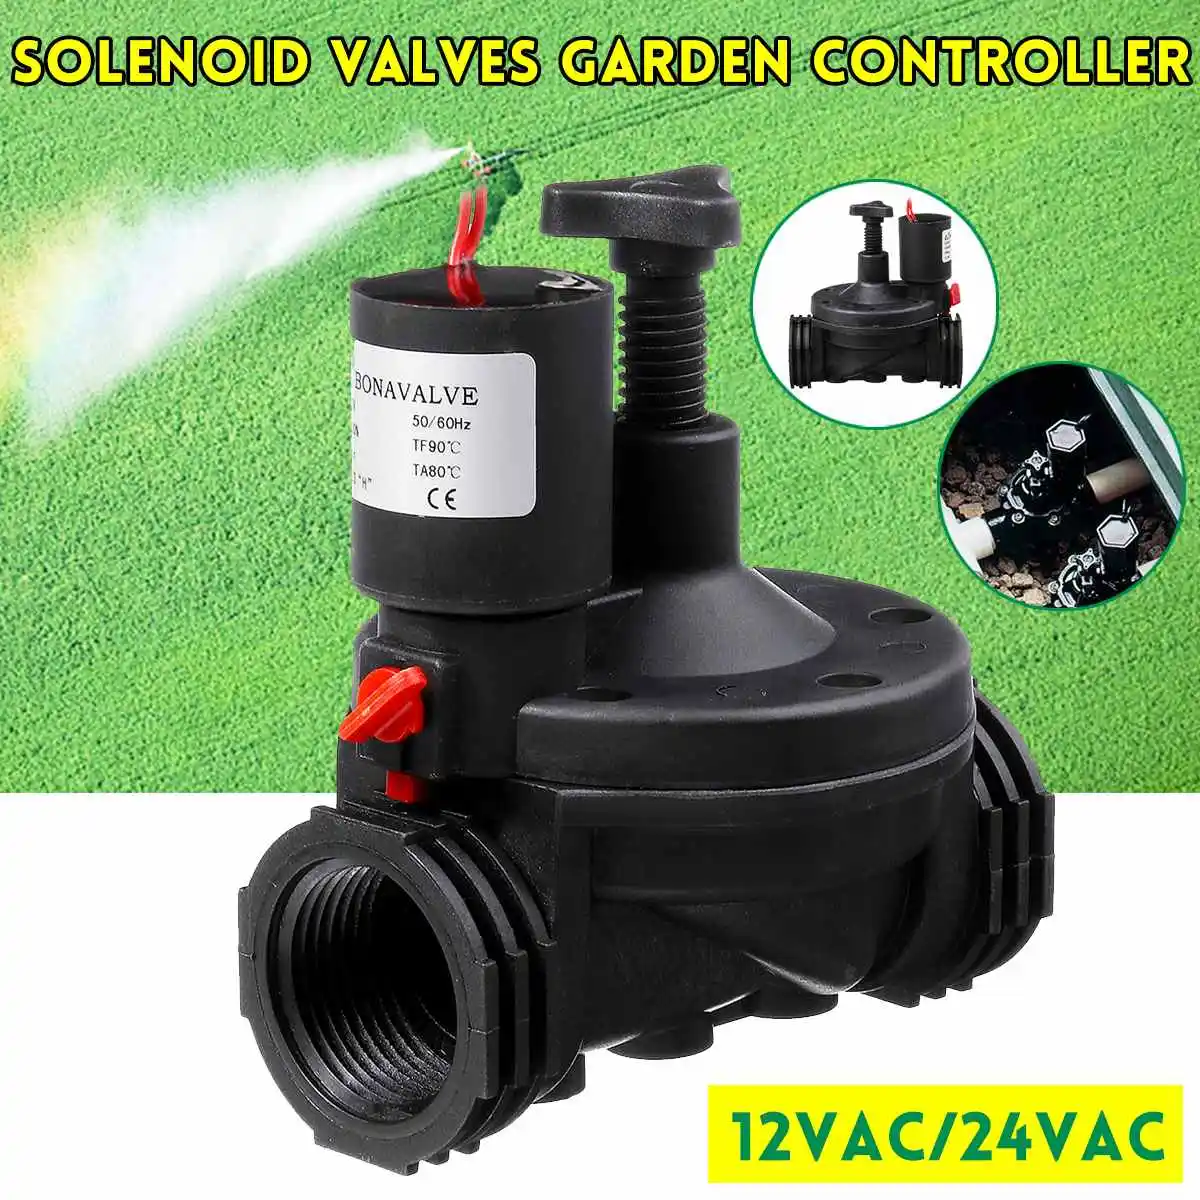 12 V/24 V AC промышленный оросительный клапан 1 ''СОЛЕНОИДНЫЕ клапаны садовый контроллер для садового двора садовые таймеры воды